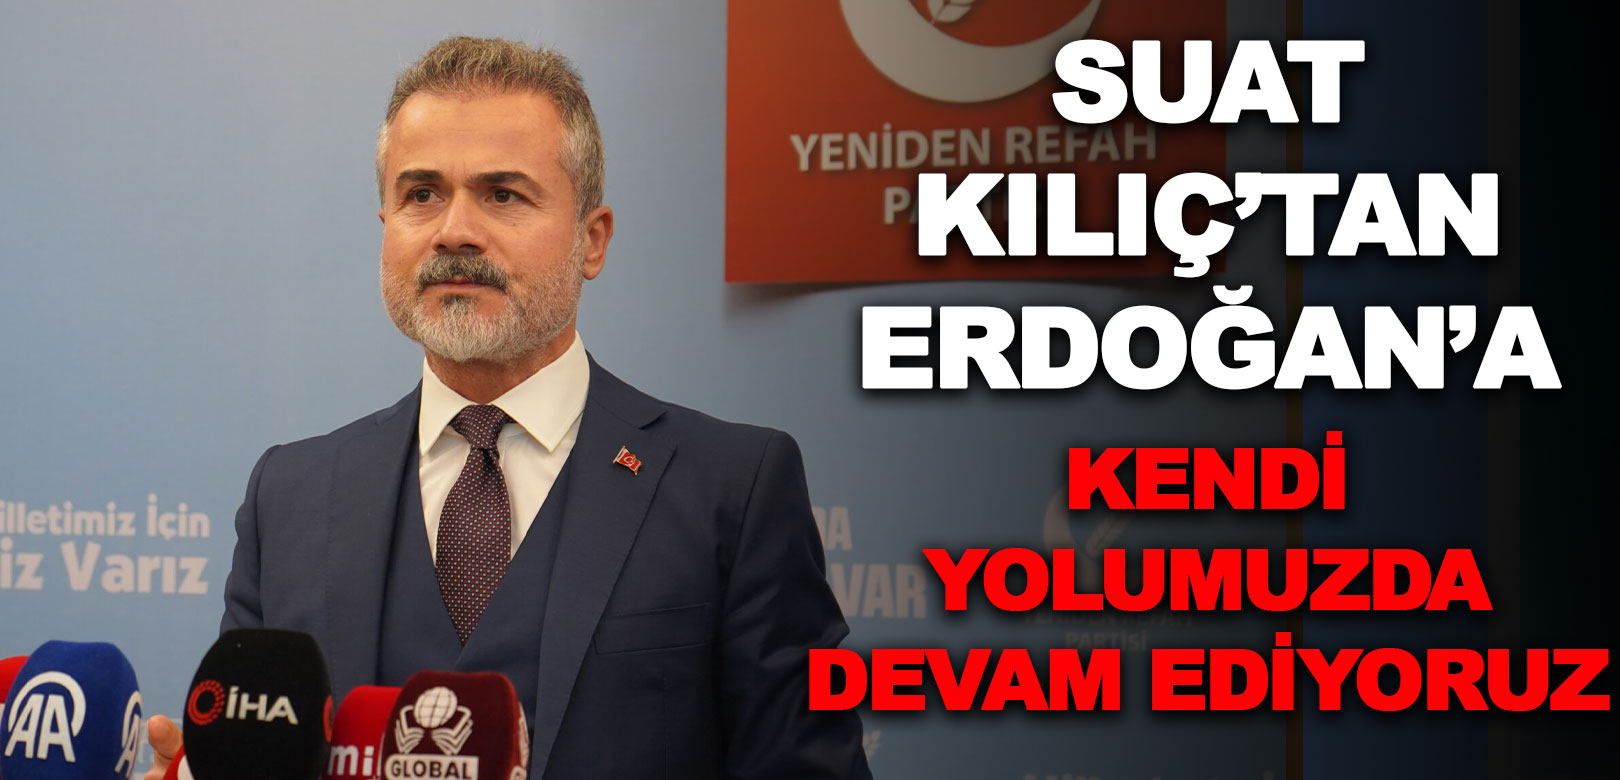 Erdoğan'ın YRP açıklamasına Suat Kılıç'tan cevap: Sayın Cumhurbaşkanımızı seviyoruz ama kendi kulvarımızda devam ediyoruz